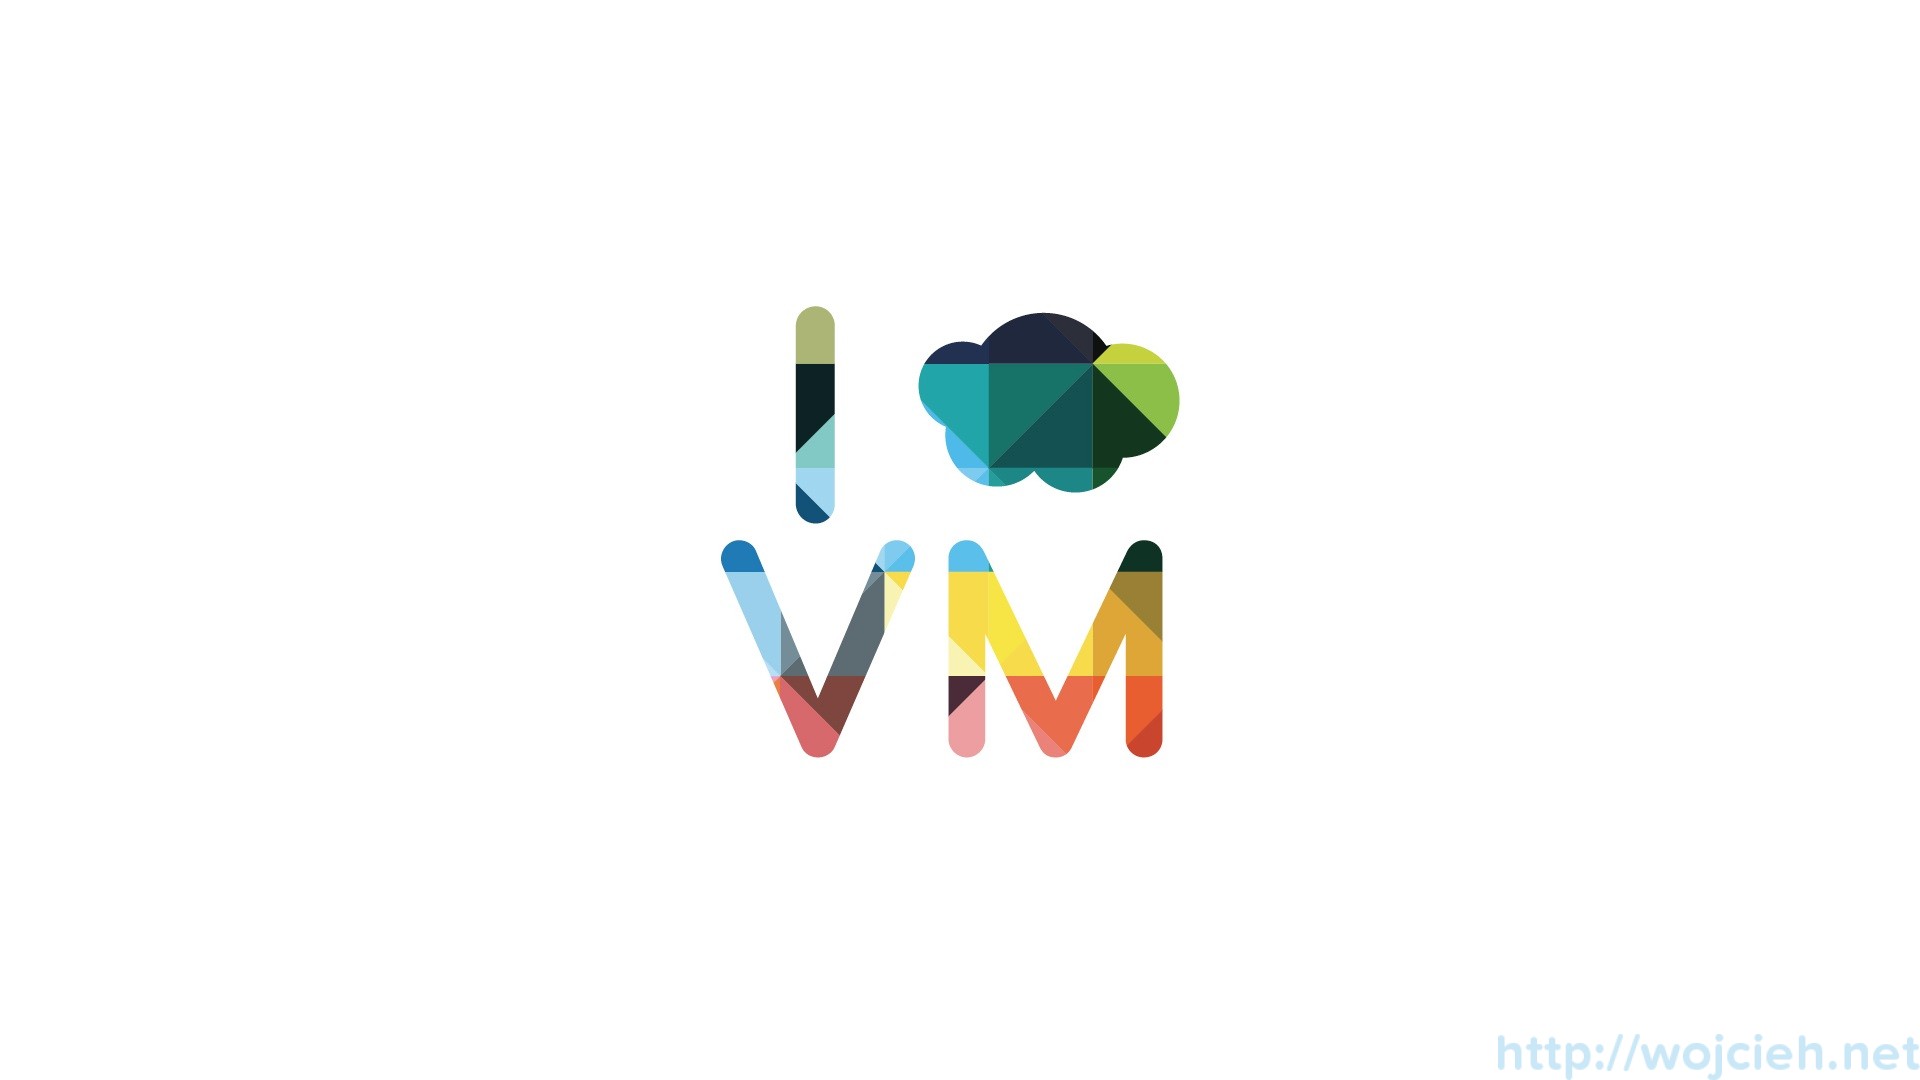 vmware wallpaper,prodotto,font,grafica,disegno grafico,diagramma